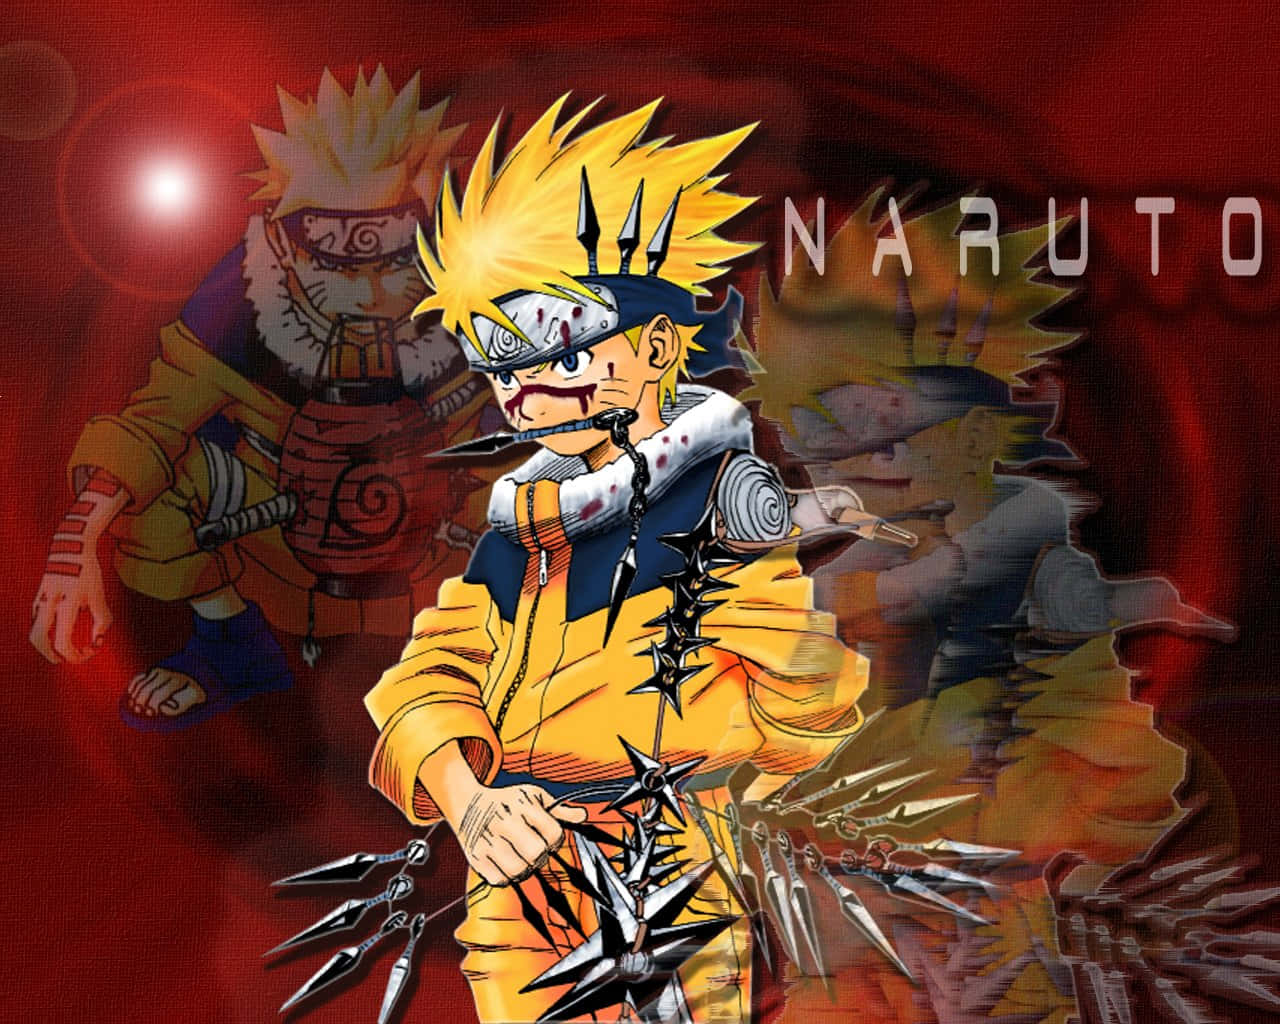 Imágenesgeniales De Naruto